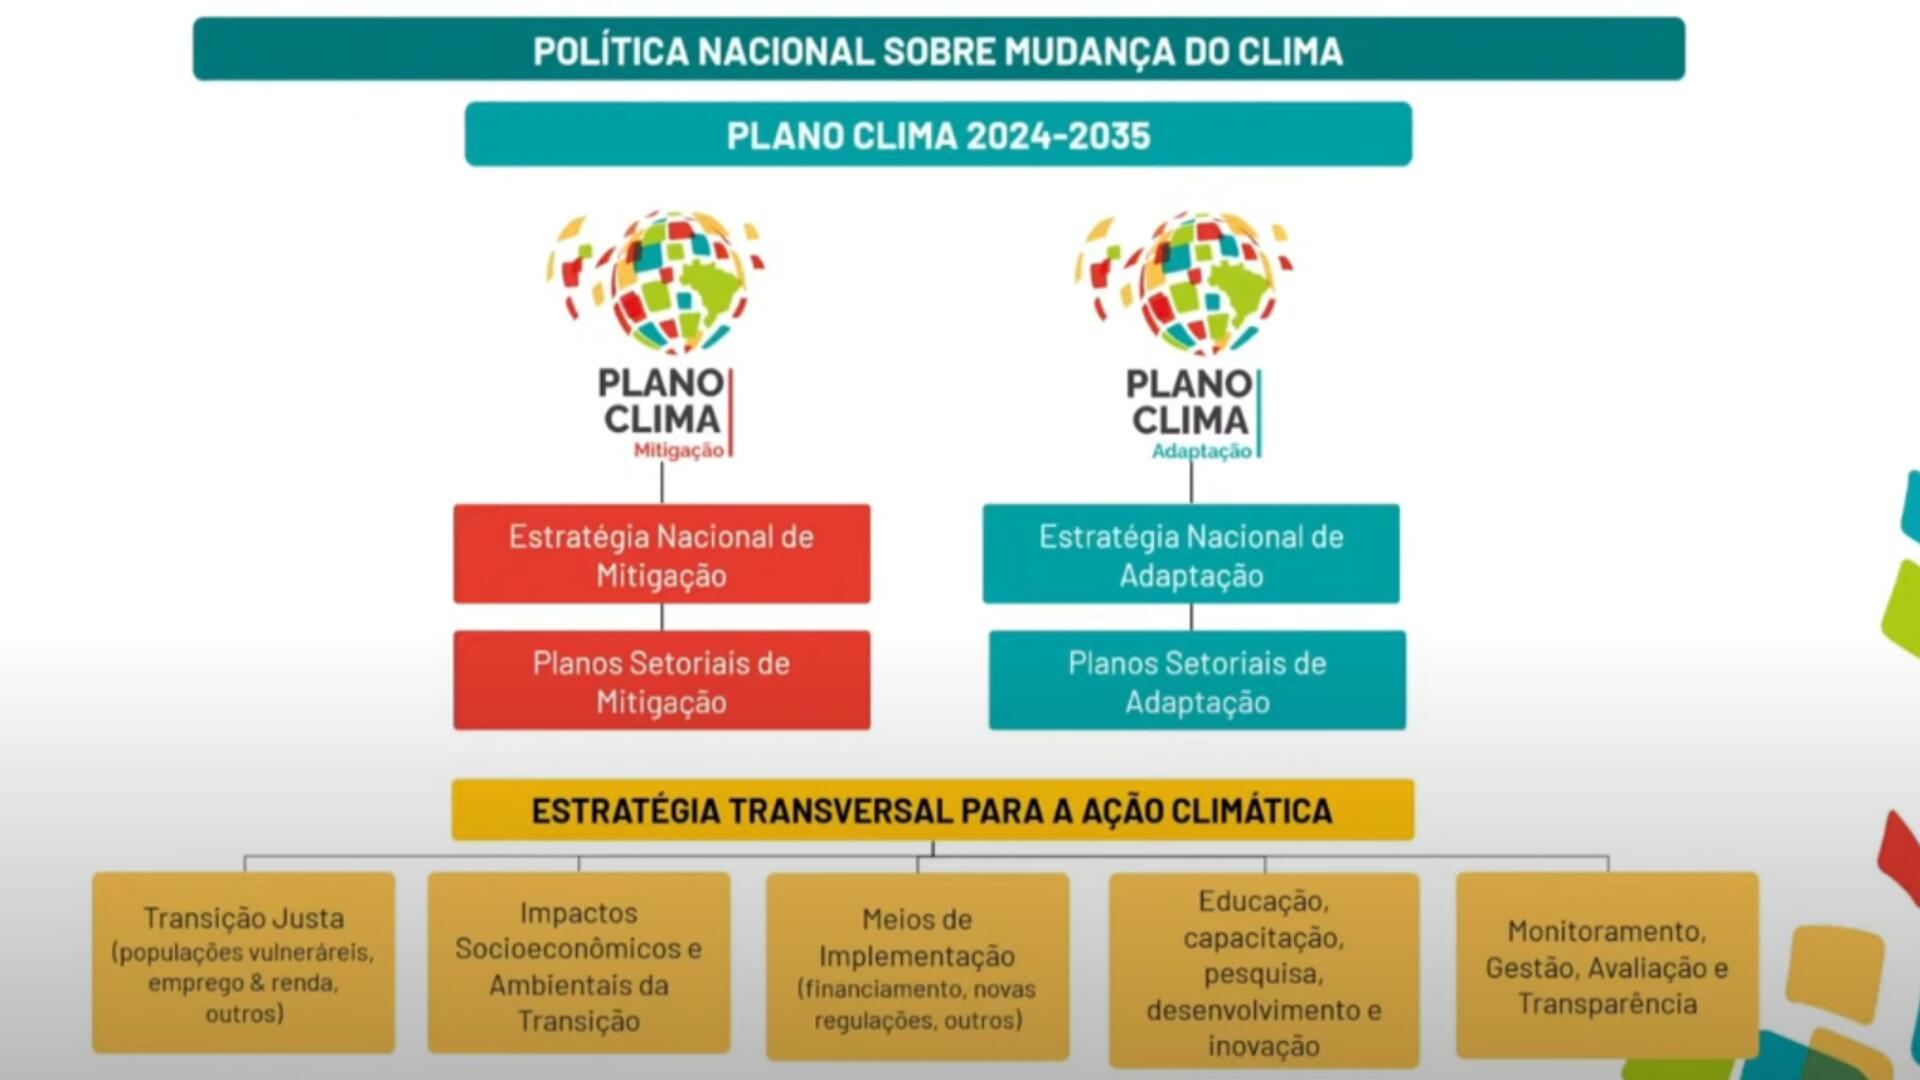 Resumo das estratégias transversais do Plano Clima apresentadas pelo governo no dia 17 de maio de 2024 em uma live no YouTube.<br />
